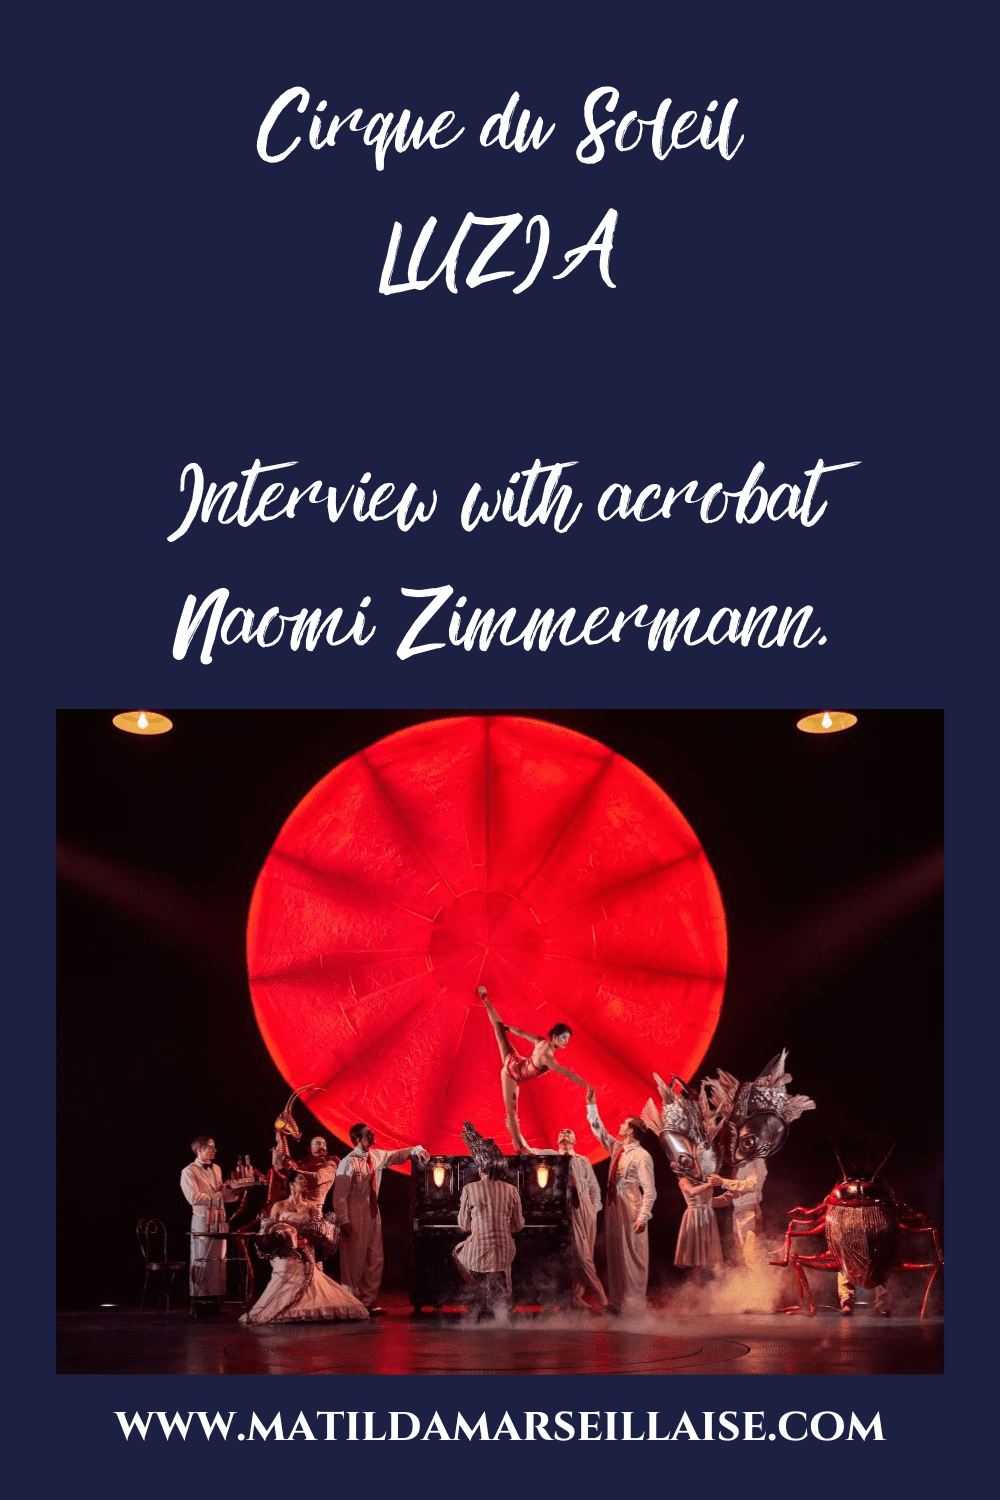 Naomi Zimmermann is an aerialist in Cirque du Soleil’s LUZIA